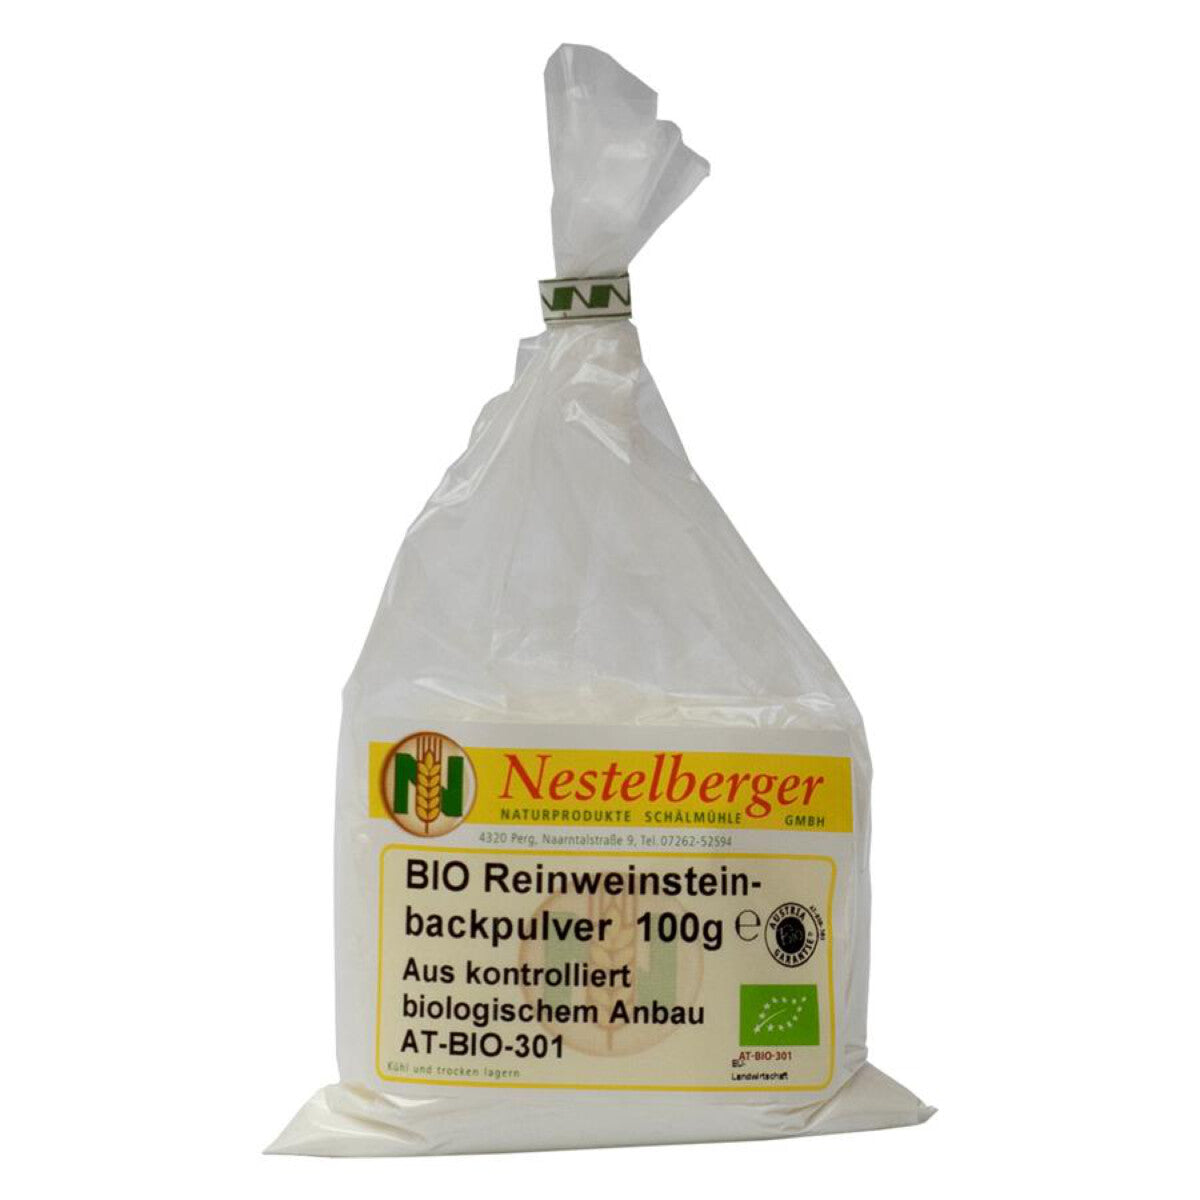 NESTELBERGER Reinweinsteinbackpulver - 100 g